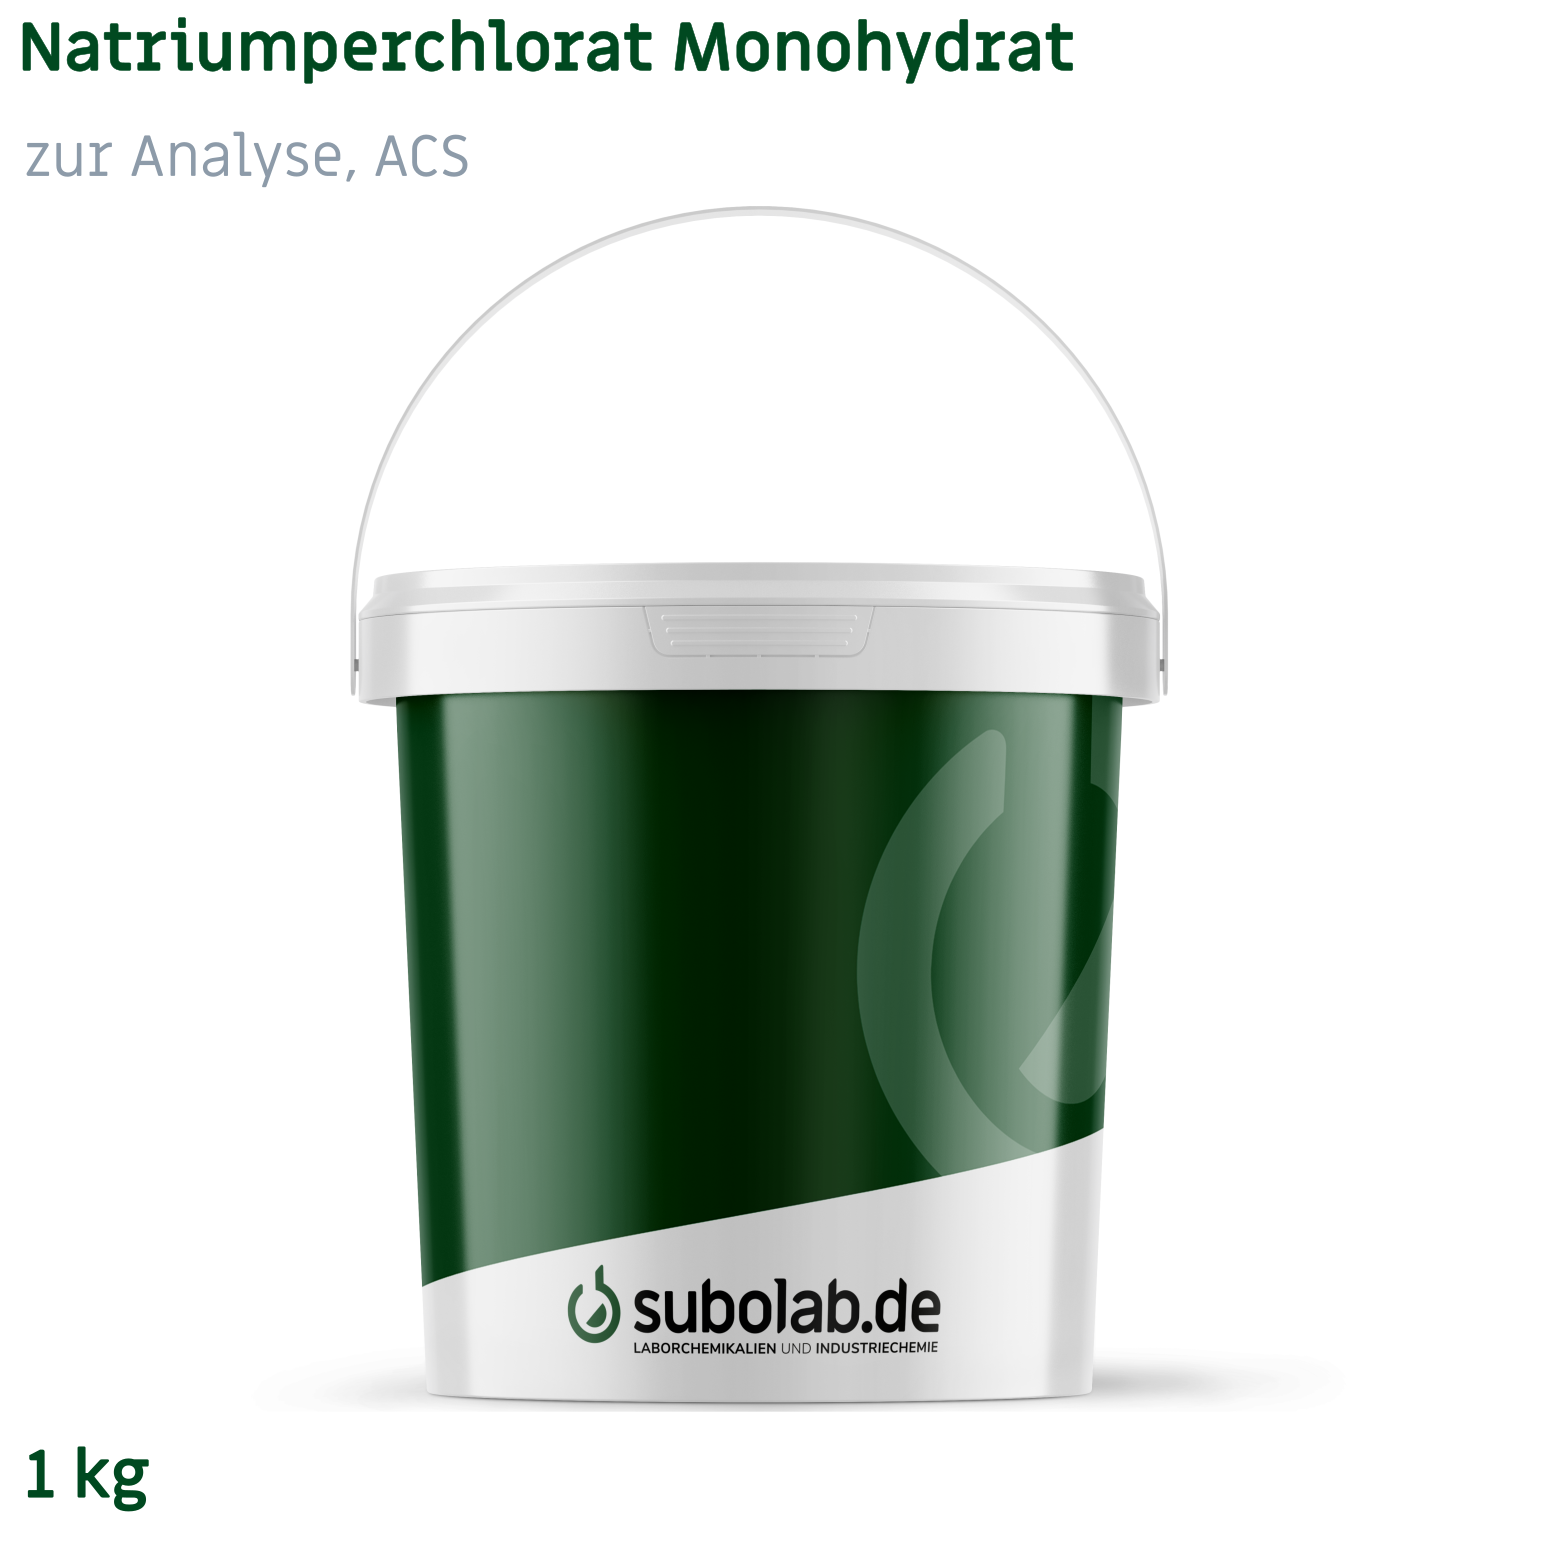 Bild von Natriumperchlorat Monohydrat zur Analyse,ACS (1 kg)